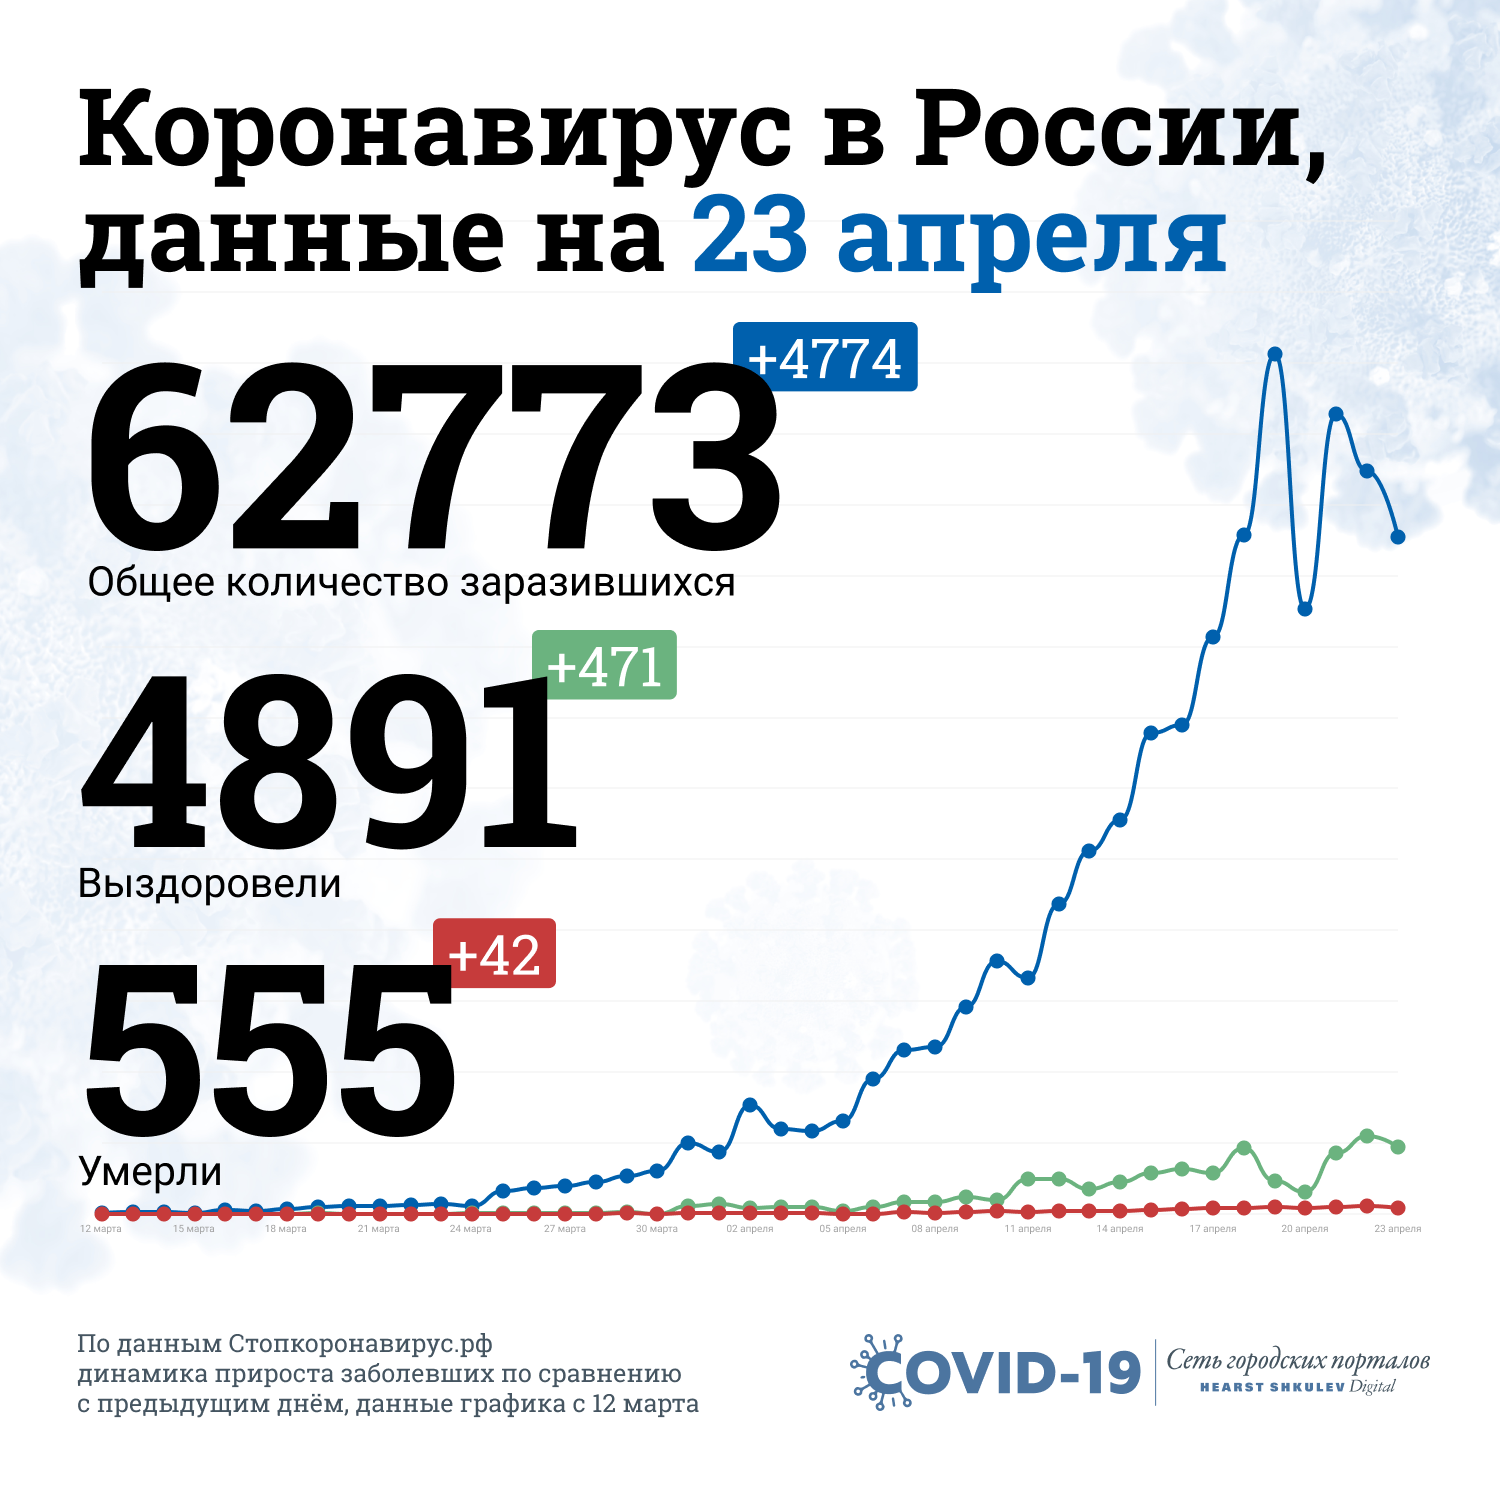 Так выглядит ситуация с коронавирусом в России на графике